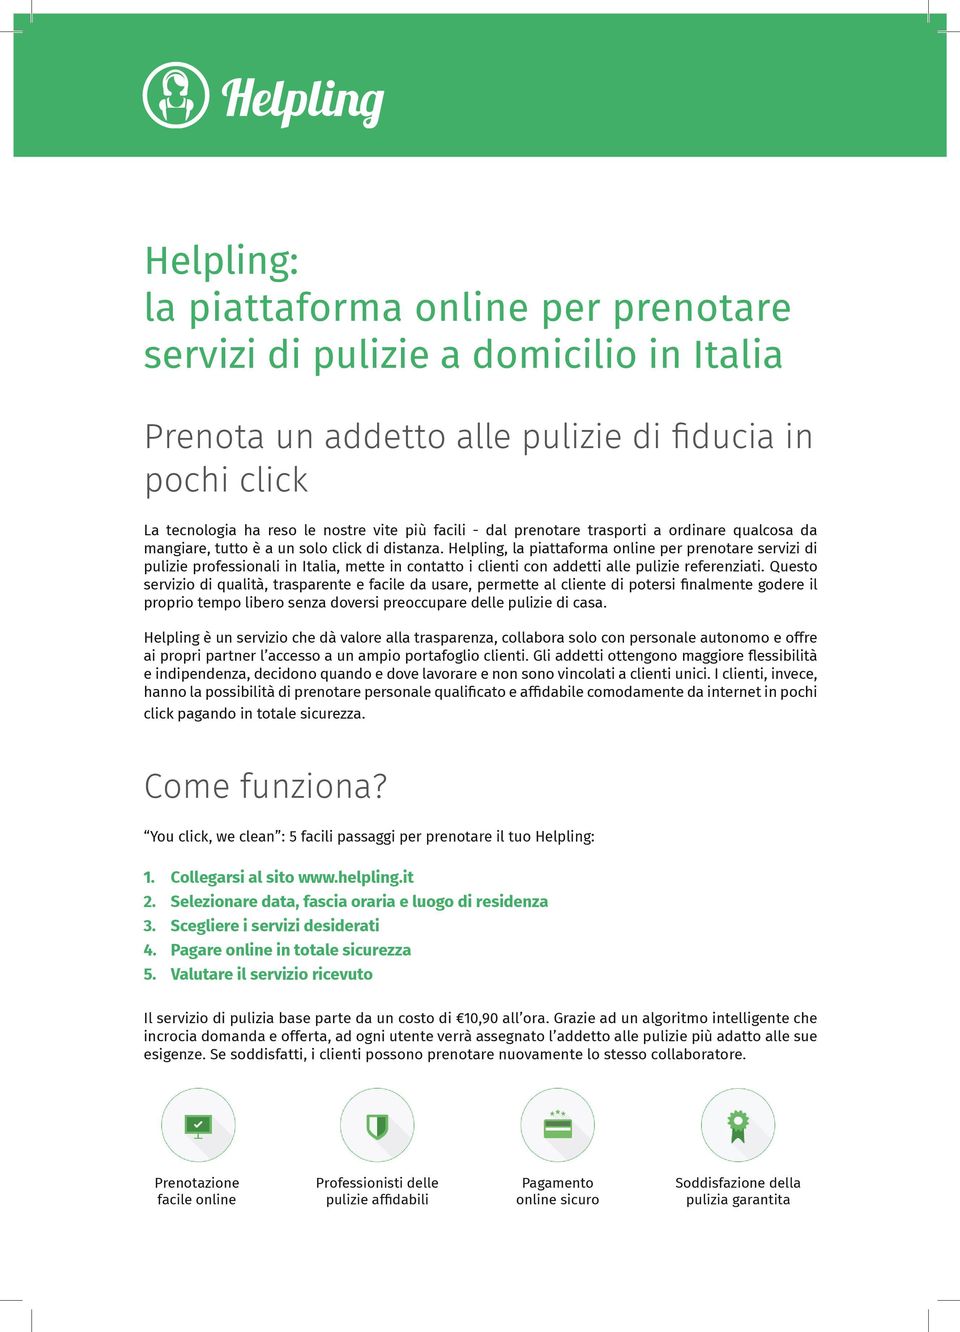 Helpling, la piattaforma online per prenotare servizi di pulizie professionali in Italia, mette in contatto i clienti con addetti alle pulizie referenziati.